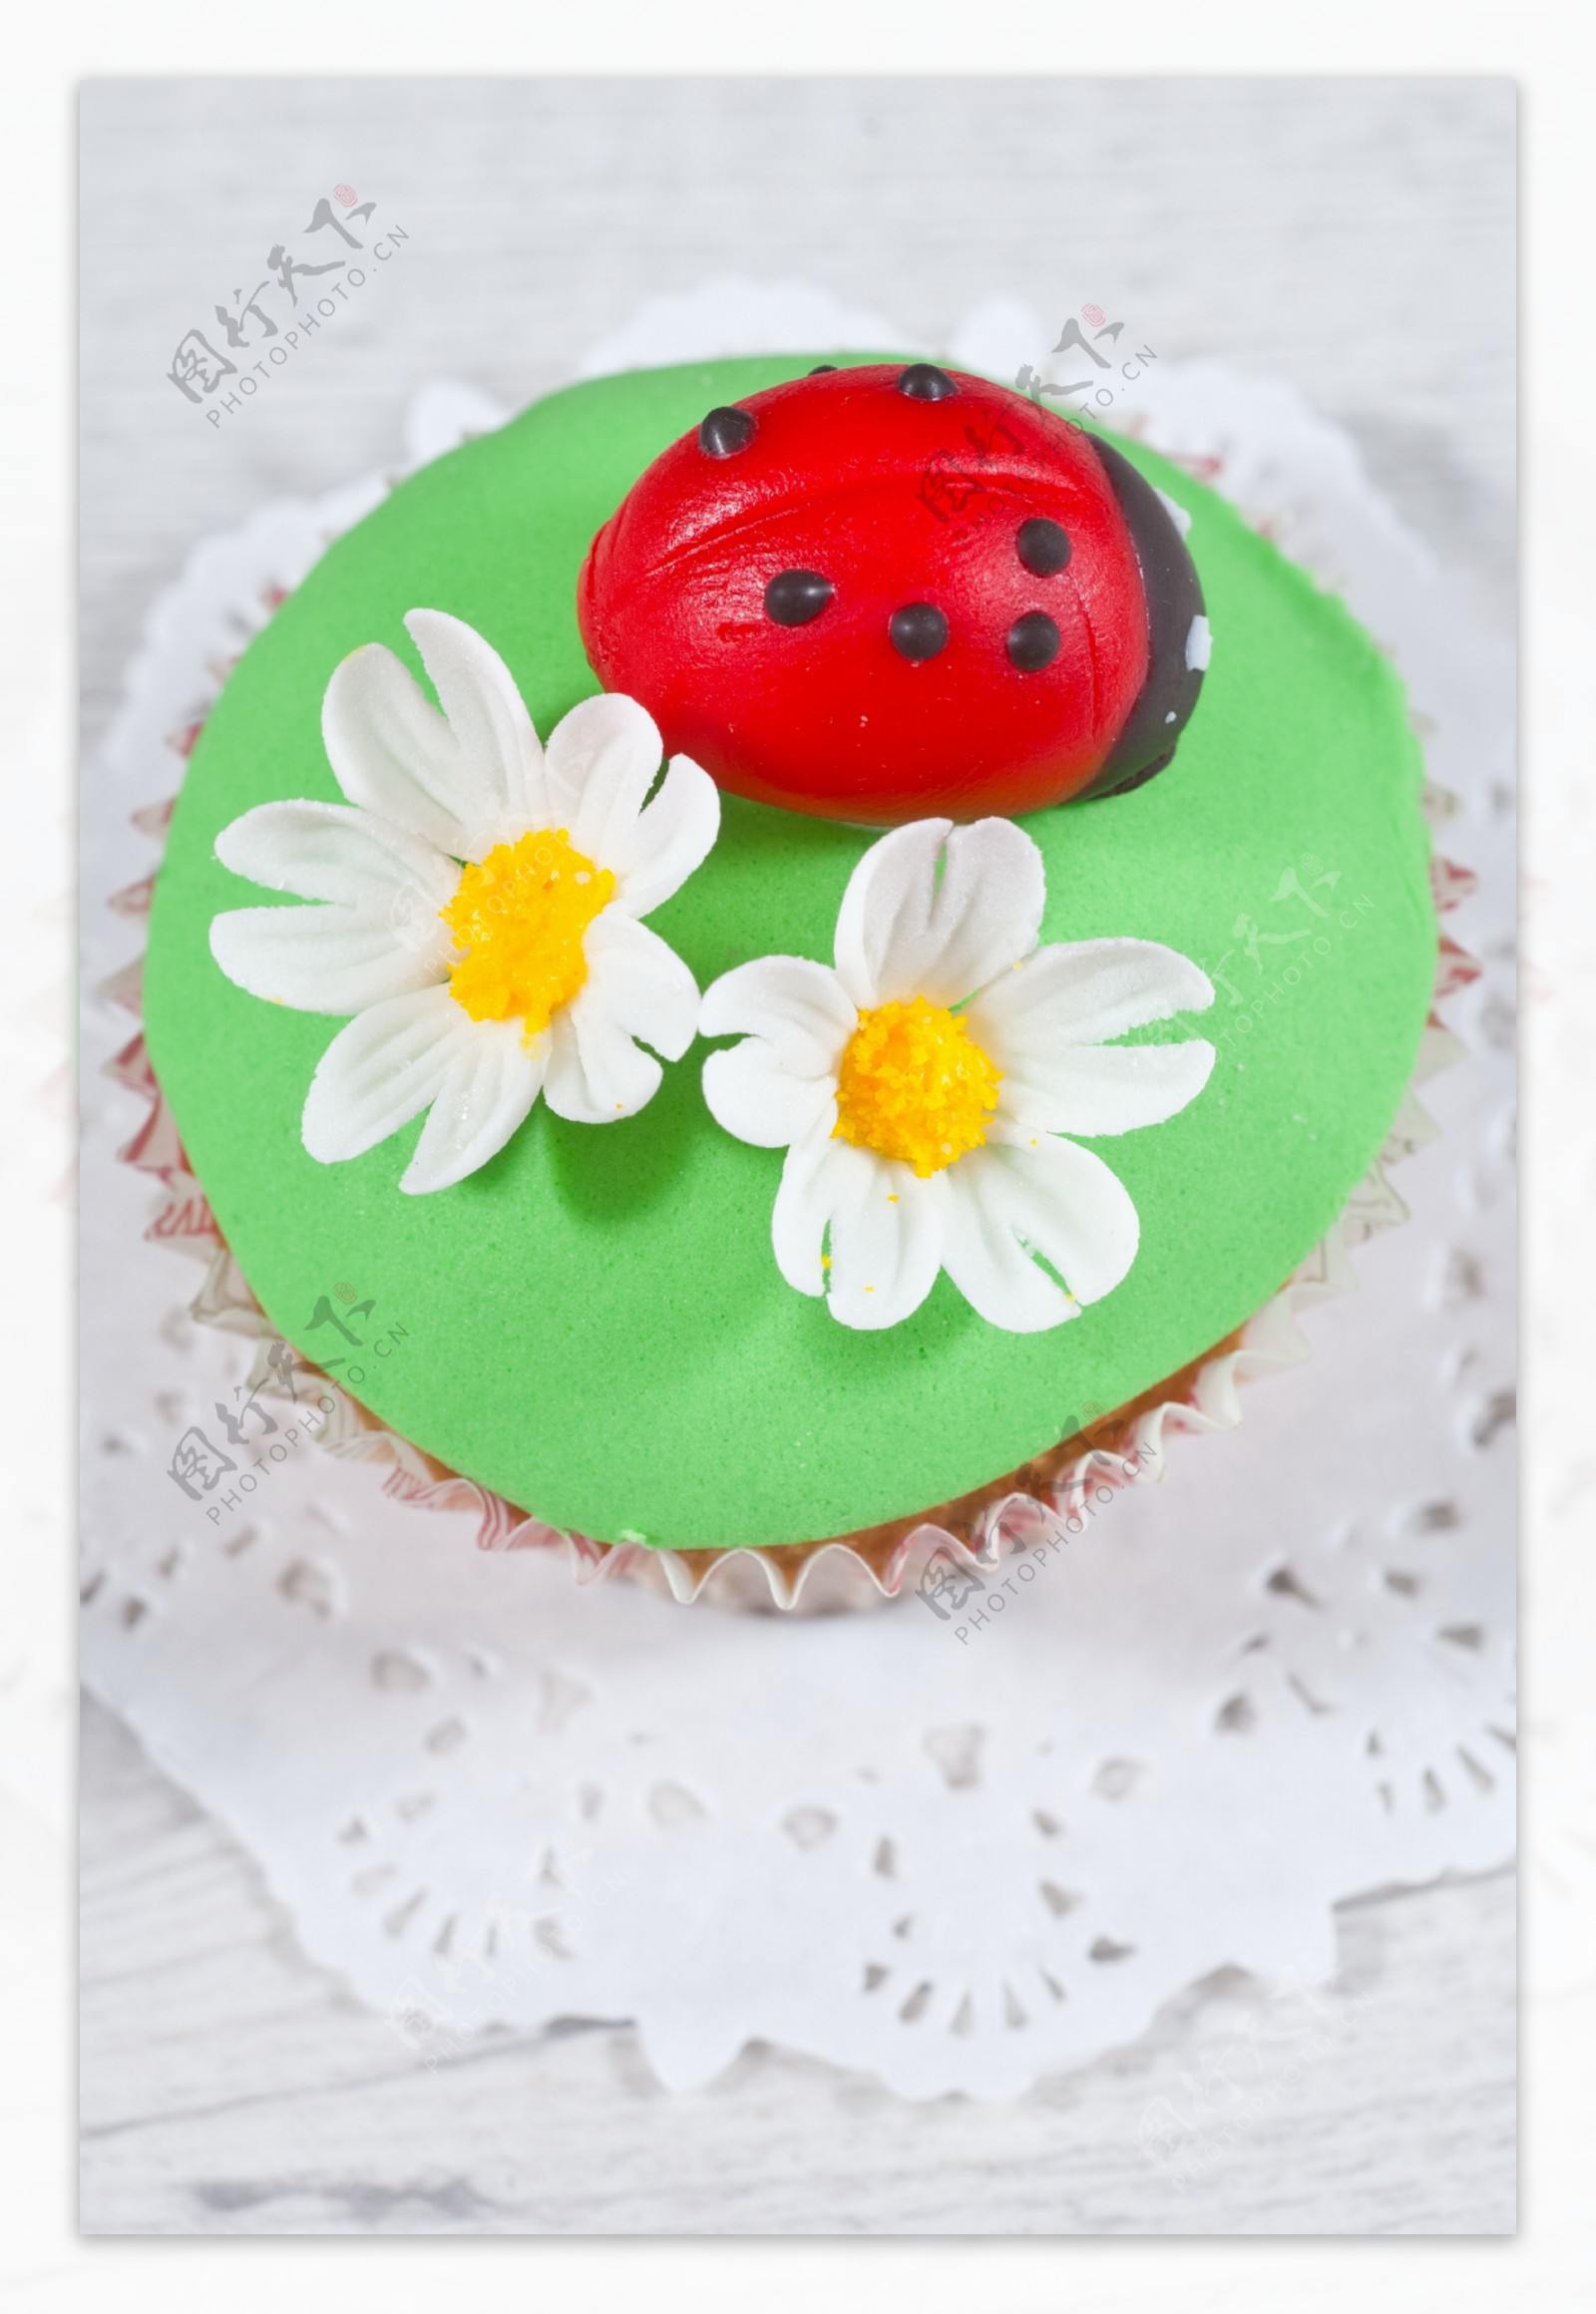 瓢虫鲜花蛋糕图片